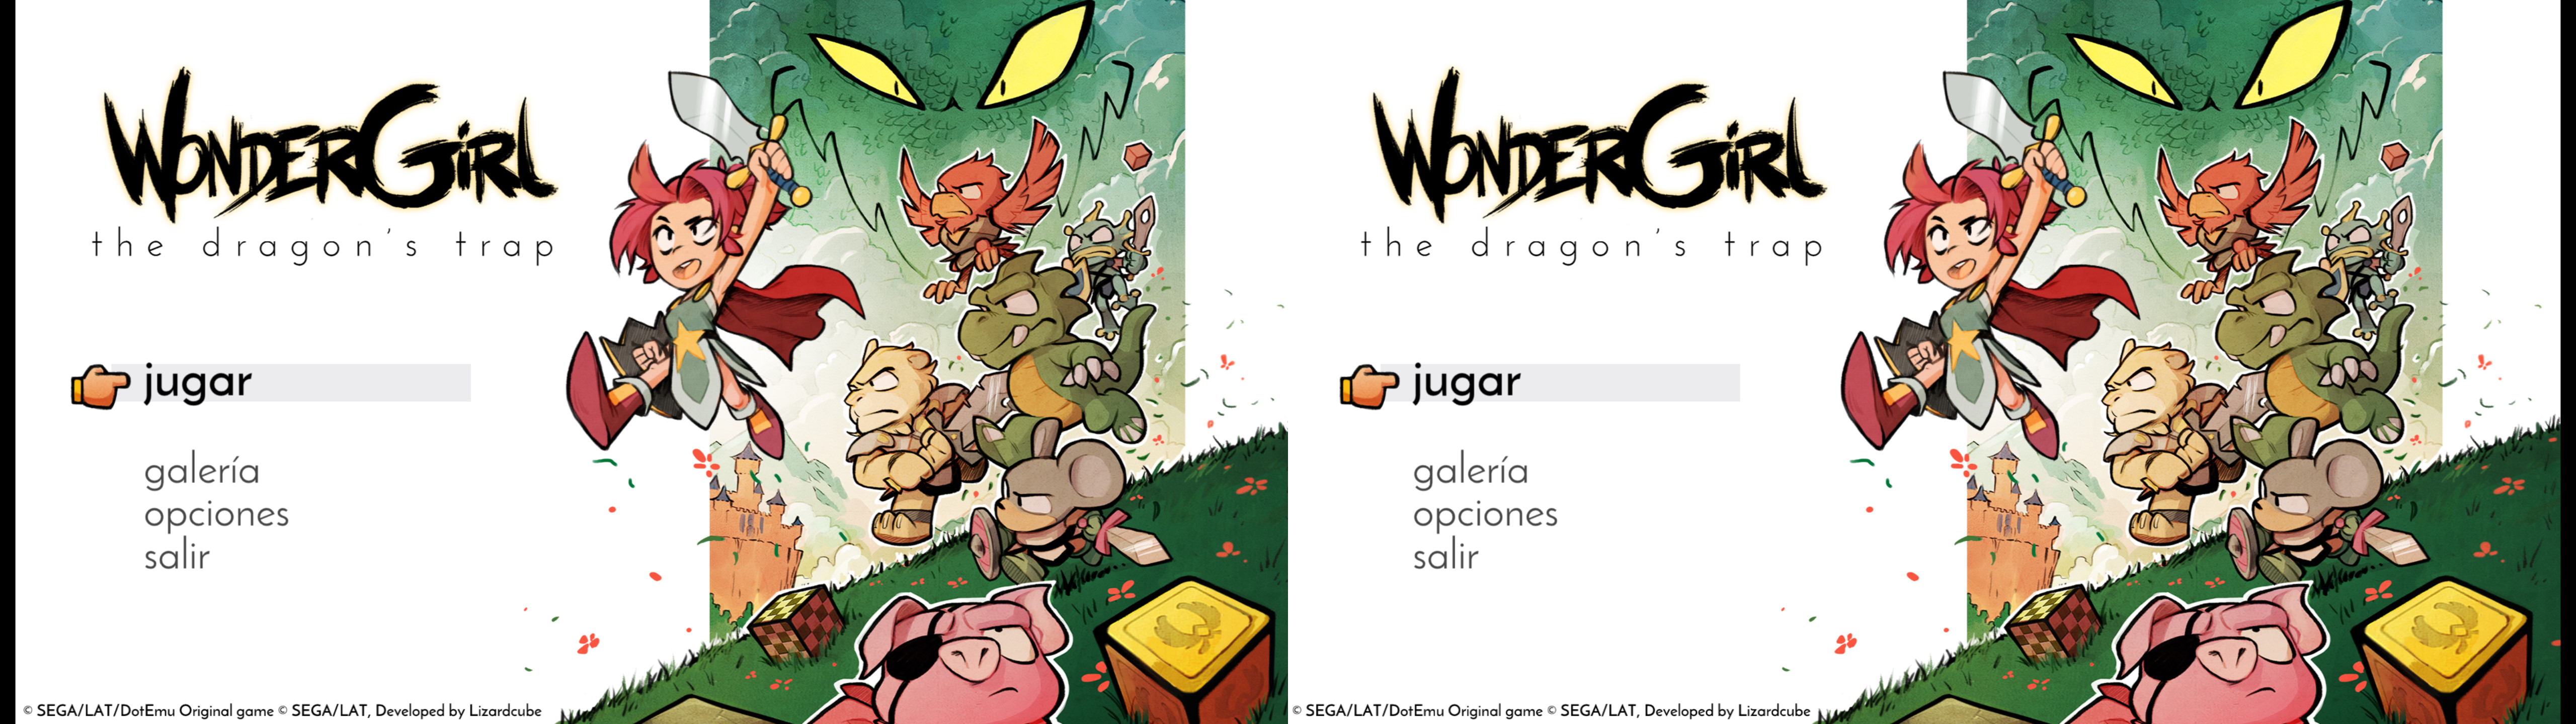 Wonder Boy: The Dragon's Trap